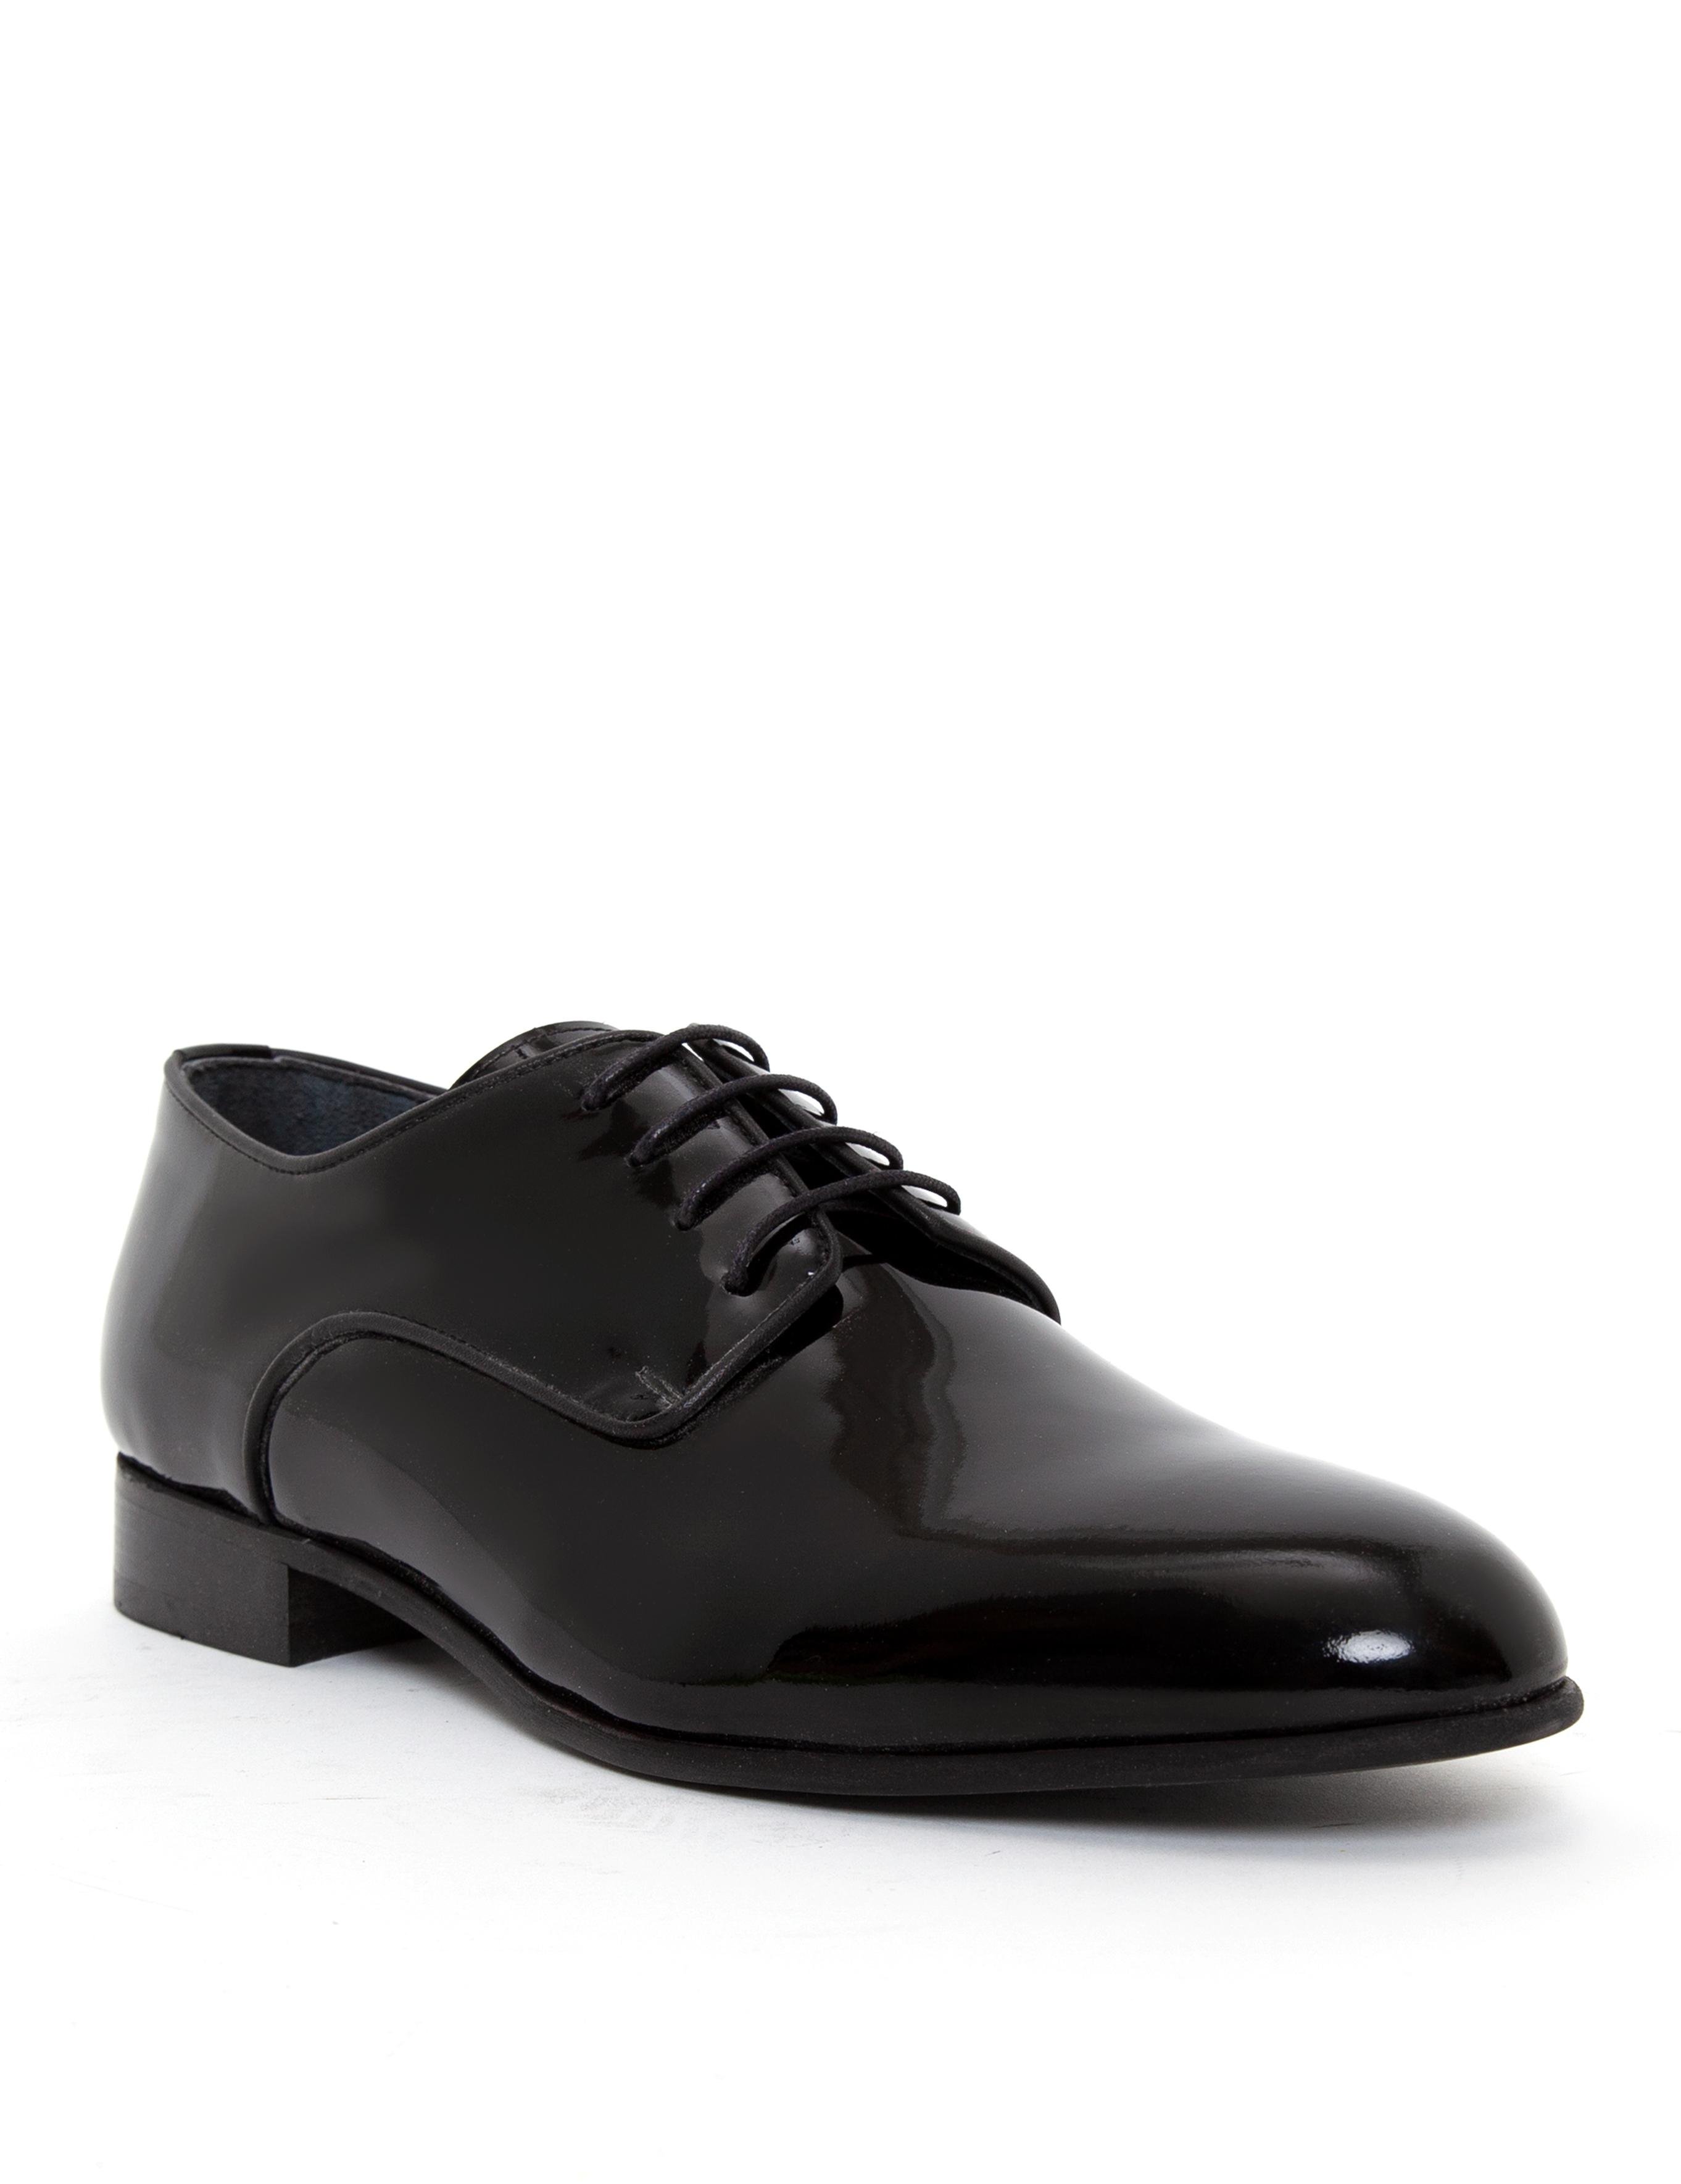 Siyah Klasik Ayakkabı - 50255466006